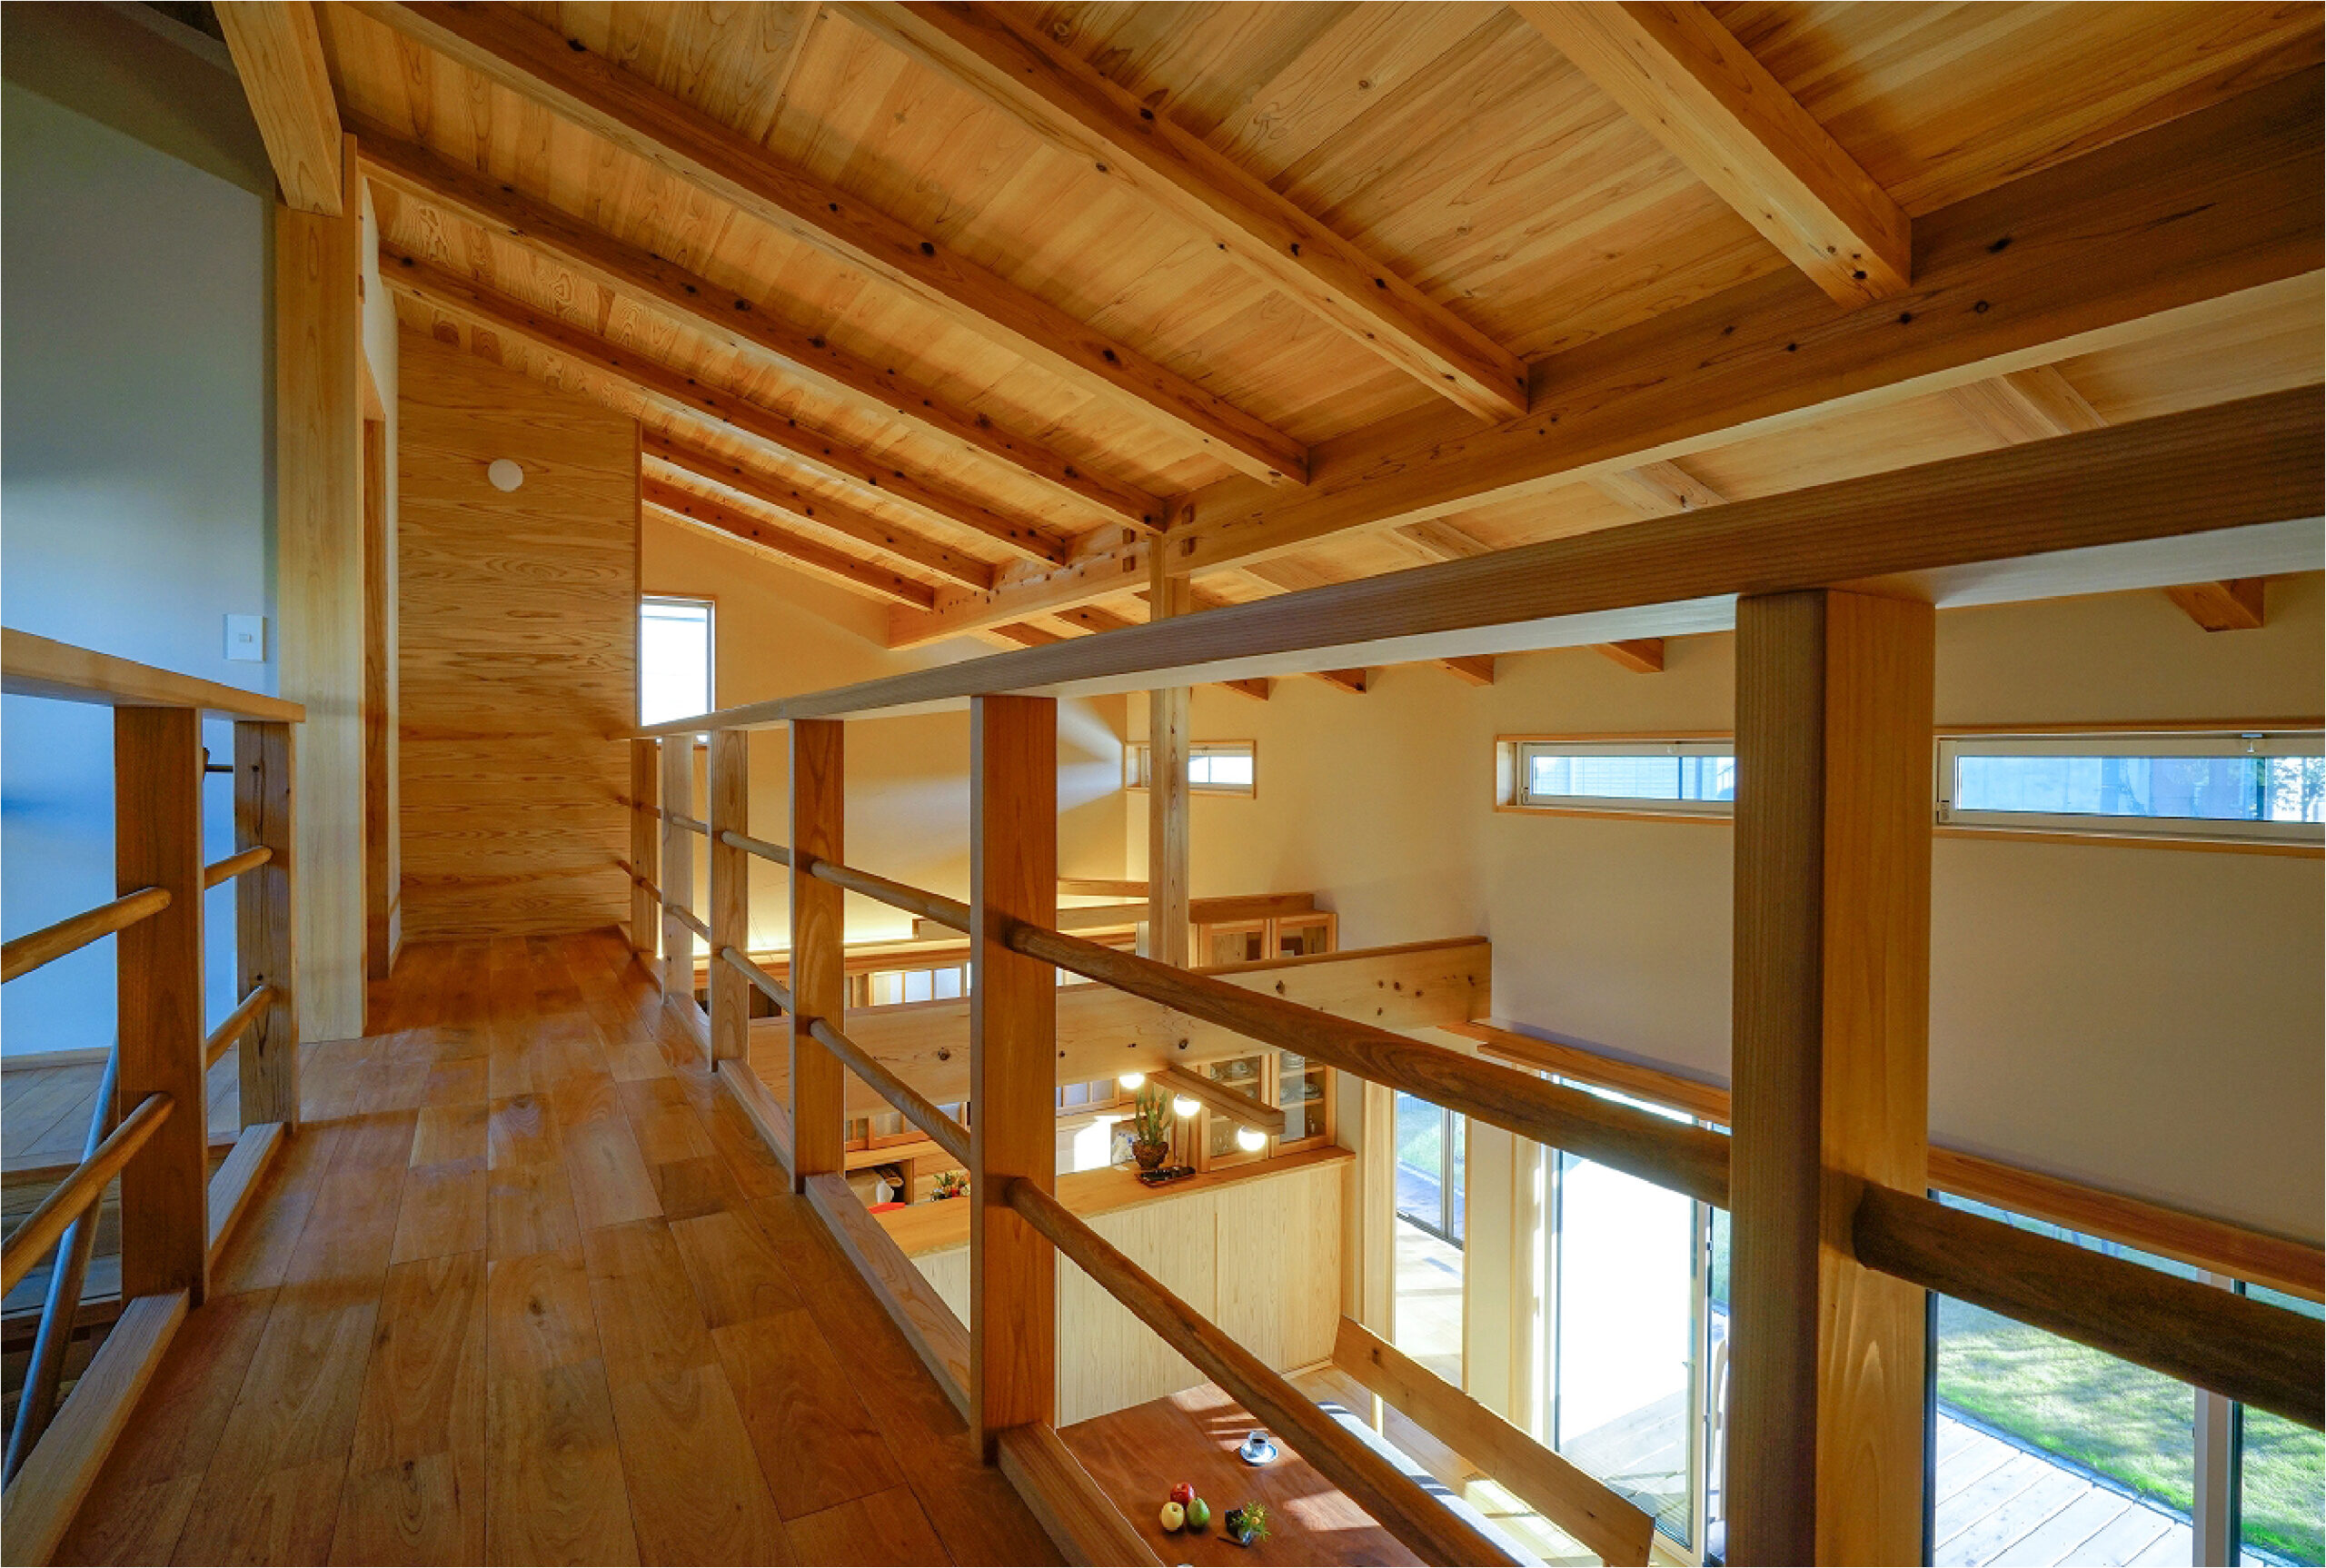 2階にいても家族の気配を感じられる開放感のある吹き抜けなら埼玉県本庄市の小林建設